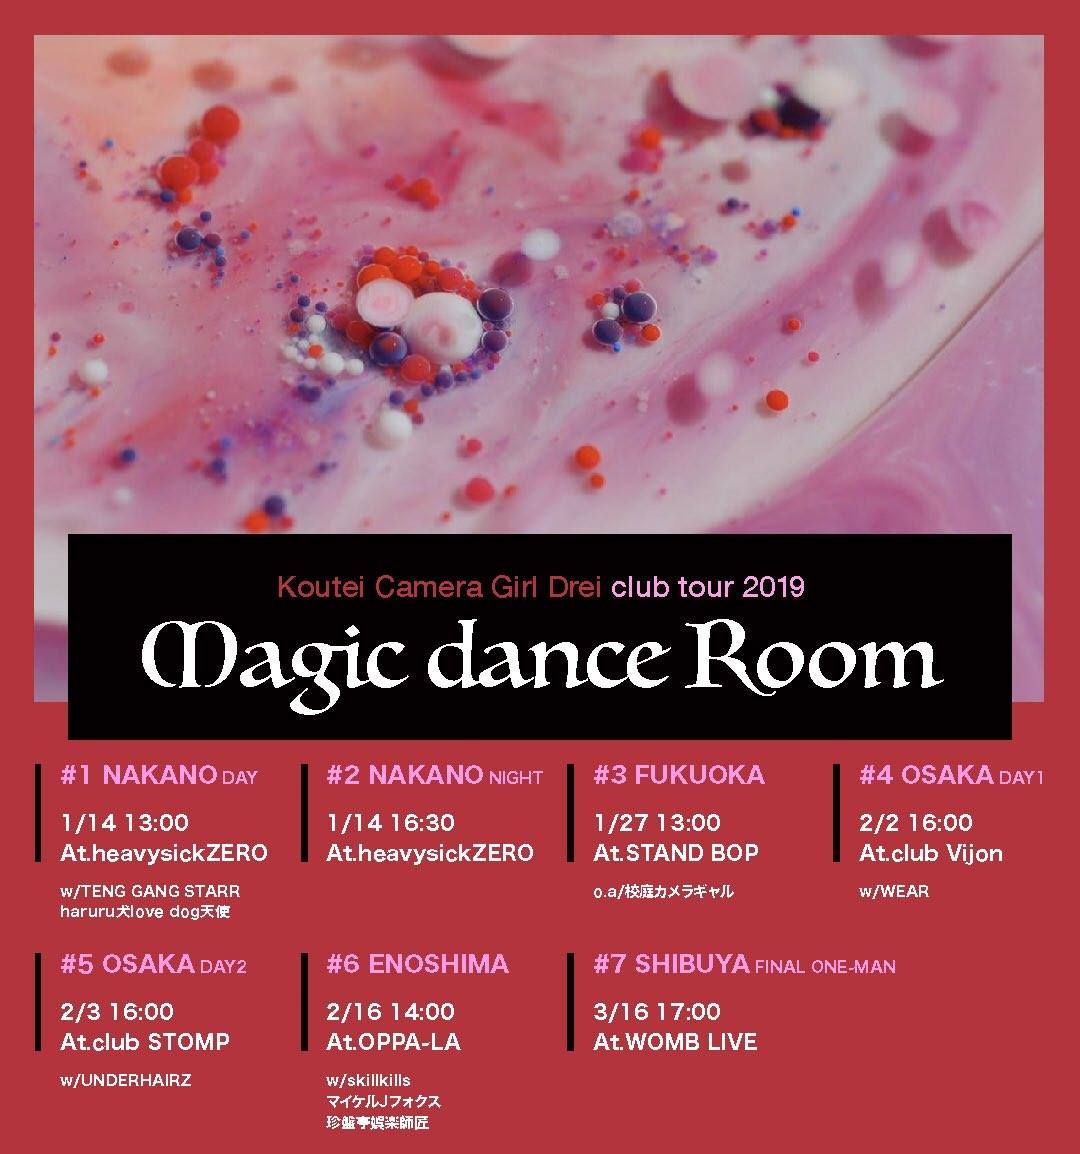 Magic dance Room#2[NAKANO NIGHT]